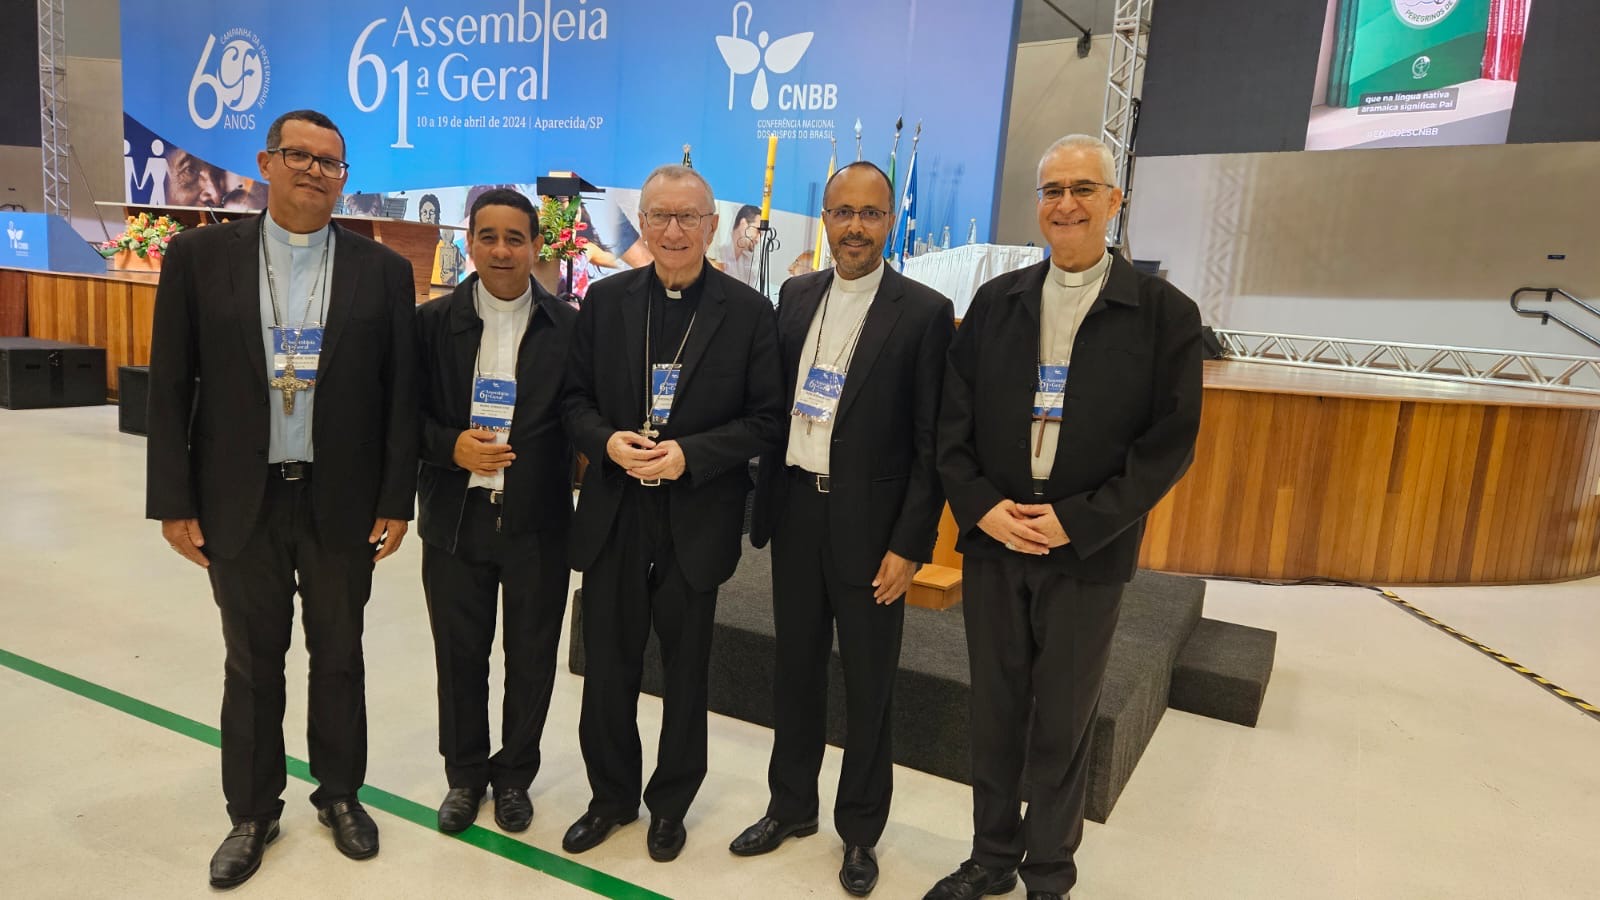 Notícia: Retiro Espiritual dos bispos marca o 2º dia de atividades da 61ª Assembleia Geral da CNBB